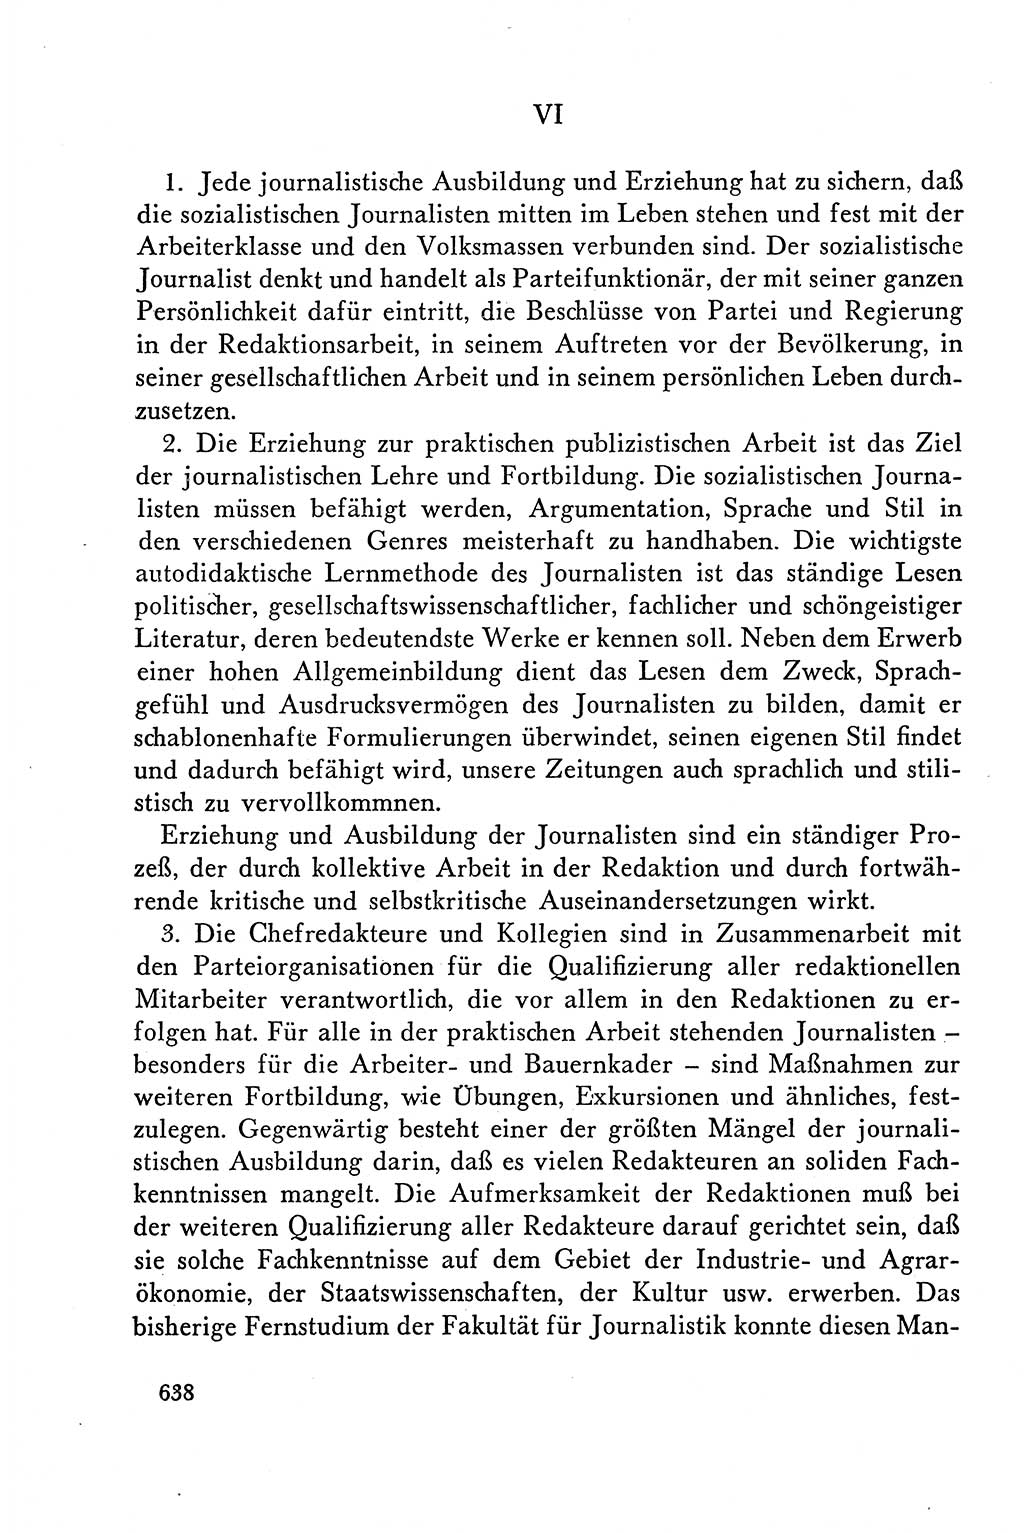 Dokumente der Sozialistischen Einheitspartei Deutschlands (SED) [Deutsche Demokratische Republik (DDR)] 1958-1959, Seite 638 (Dok. SED DDR 1958-1959, S. 638)